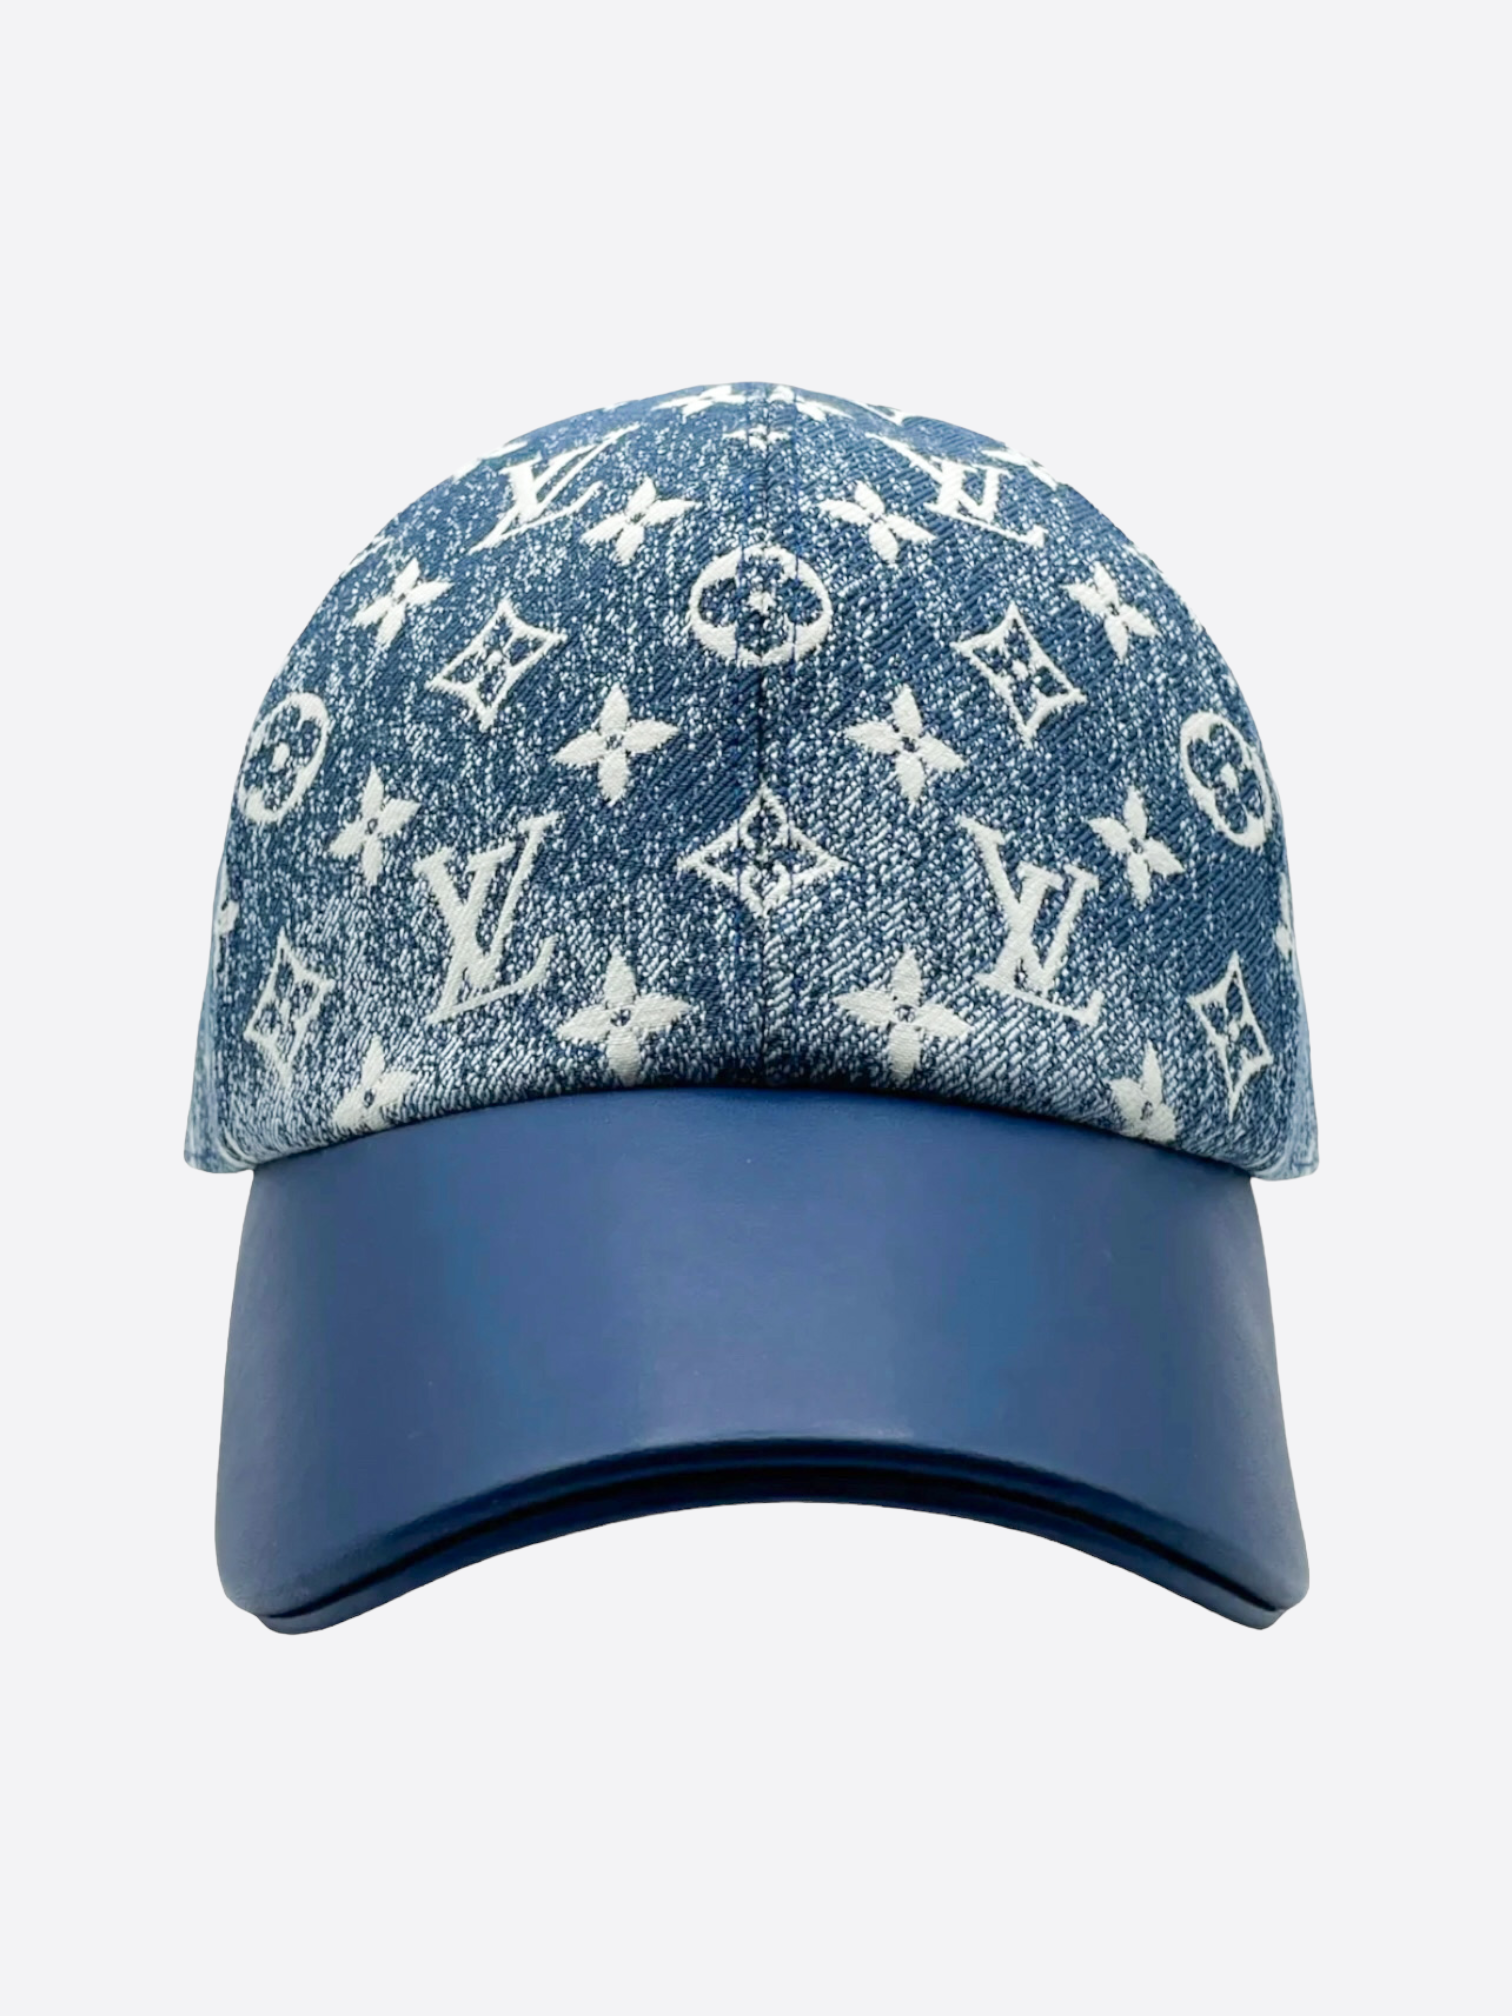 Louis Vuitton Monogram Legacy Cap - Blue Hats, Accessories - LOU486002